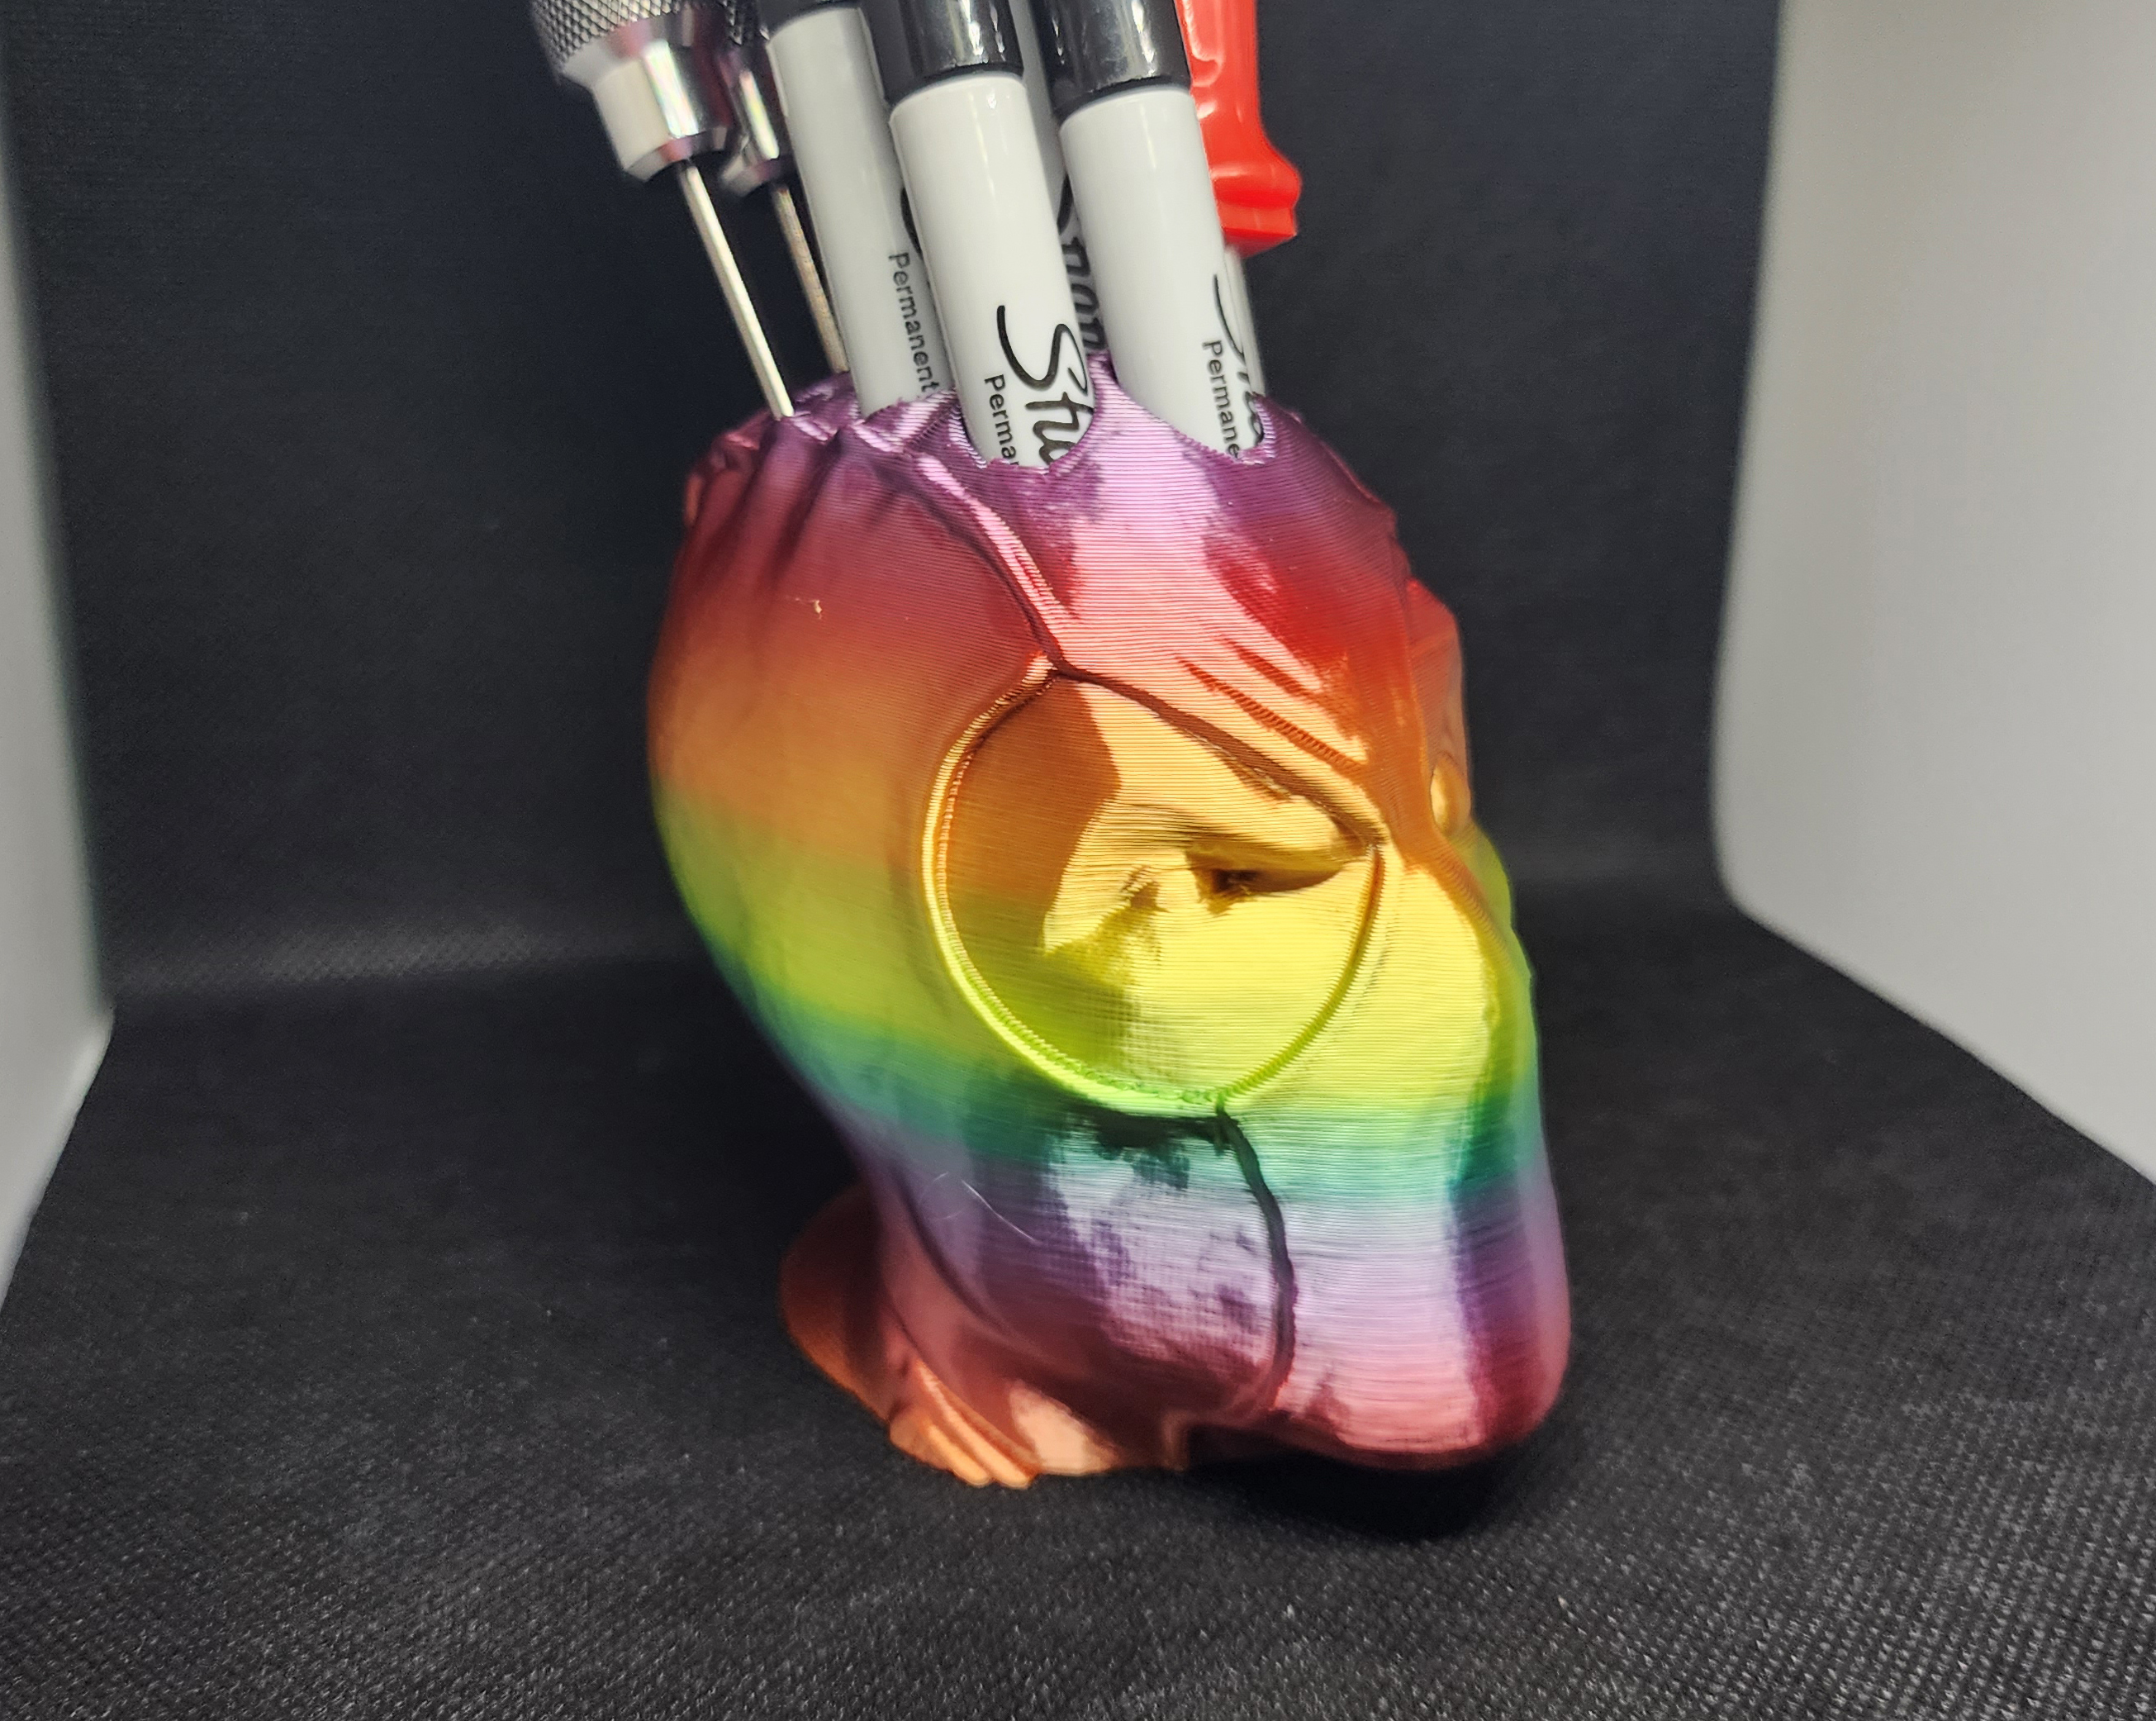 Deadpool Pen Caddy by Triple G Workshop